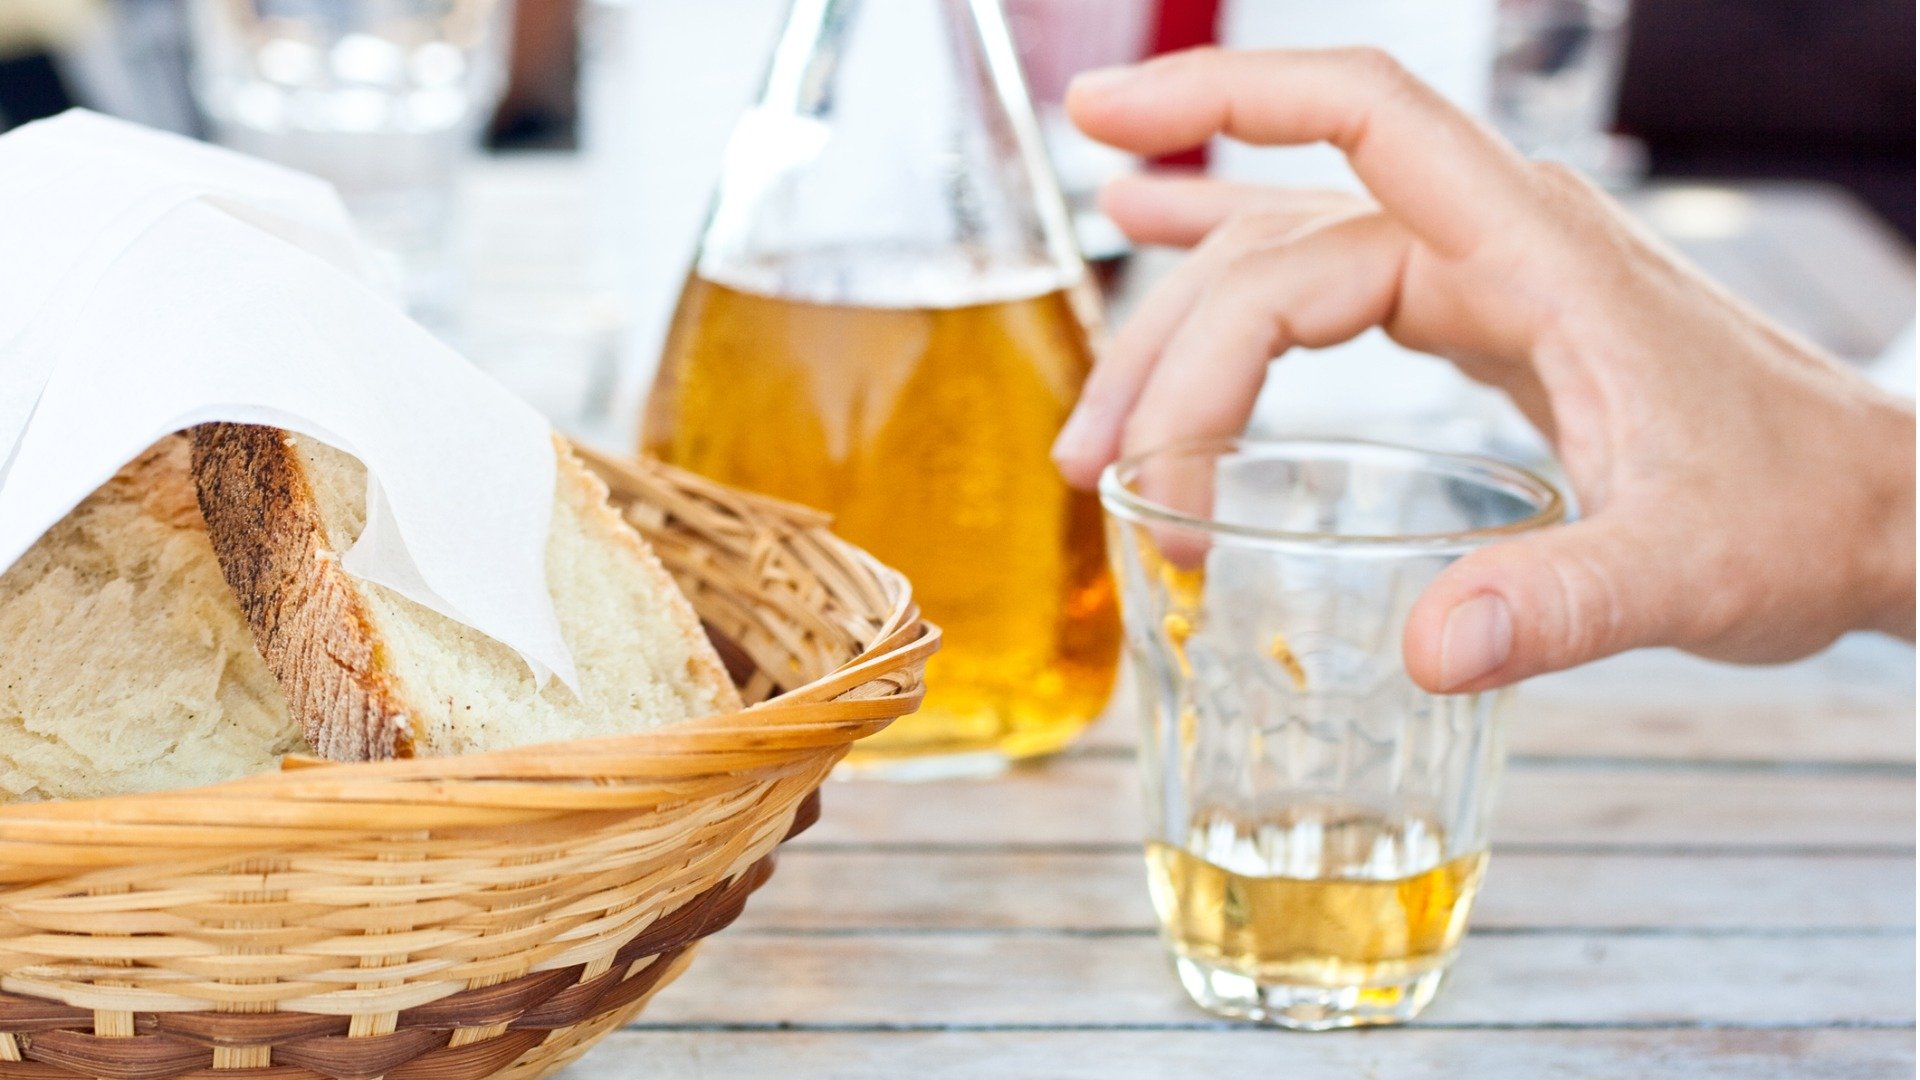 Acesta este un prim plan al unui coș umplut cu pâine și mâna cuiva care ține un pahar de vin grecesc retsina.  Pe fundal, o carafa de retsina. 